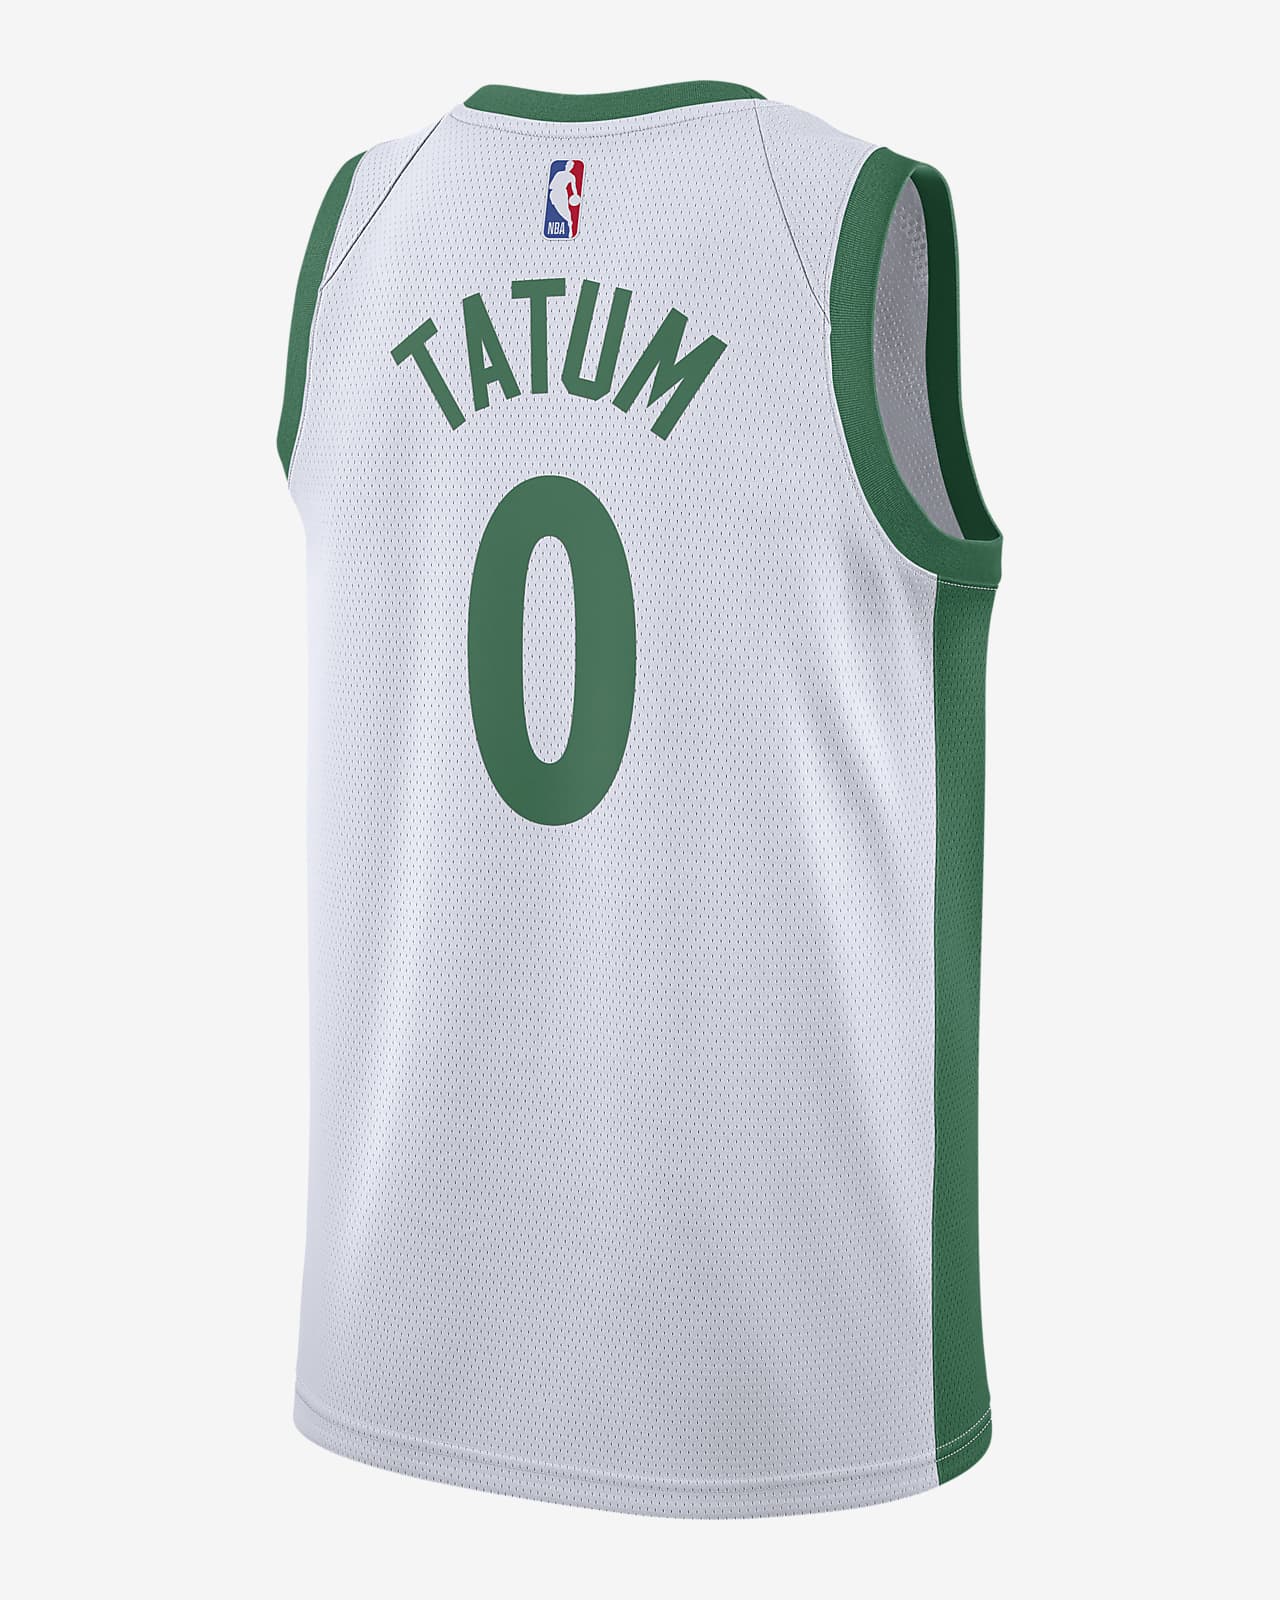 jayson tatum basketball jersey